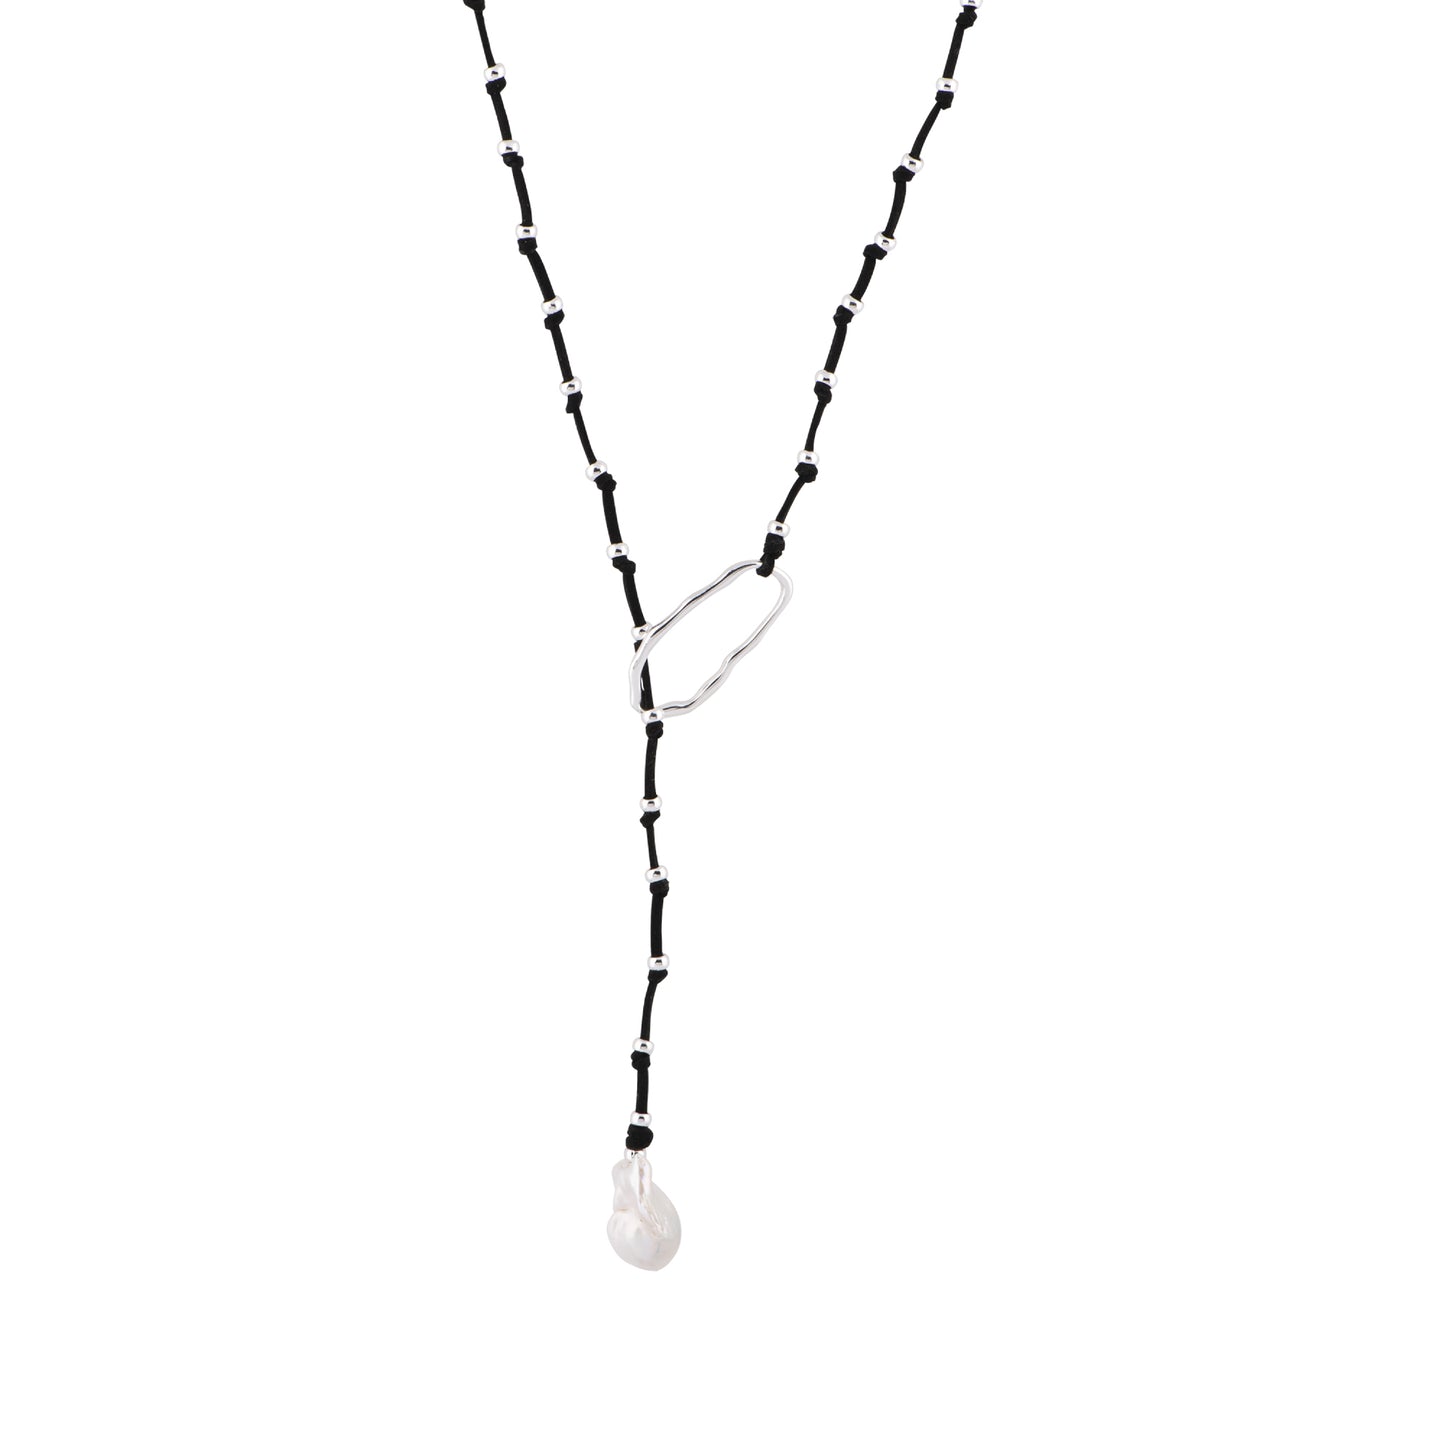 Carina - Adjustable baroque pearl necklace (Black)